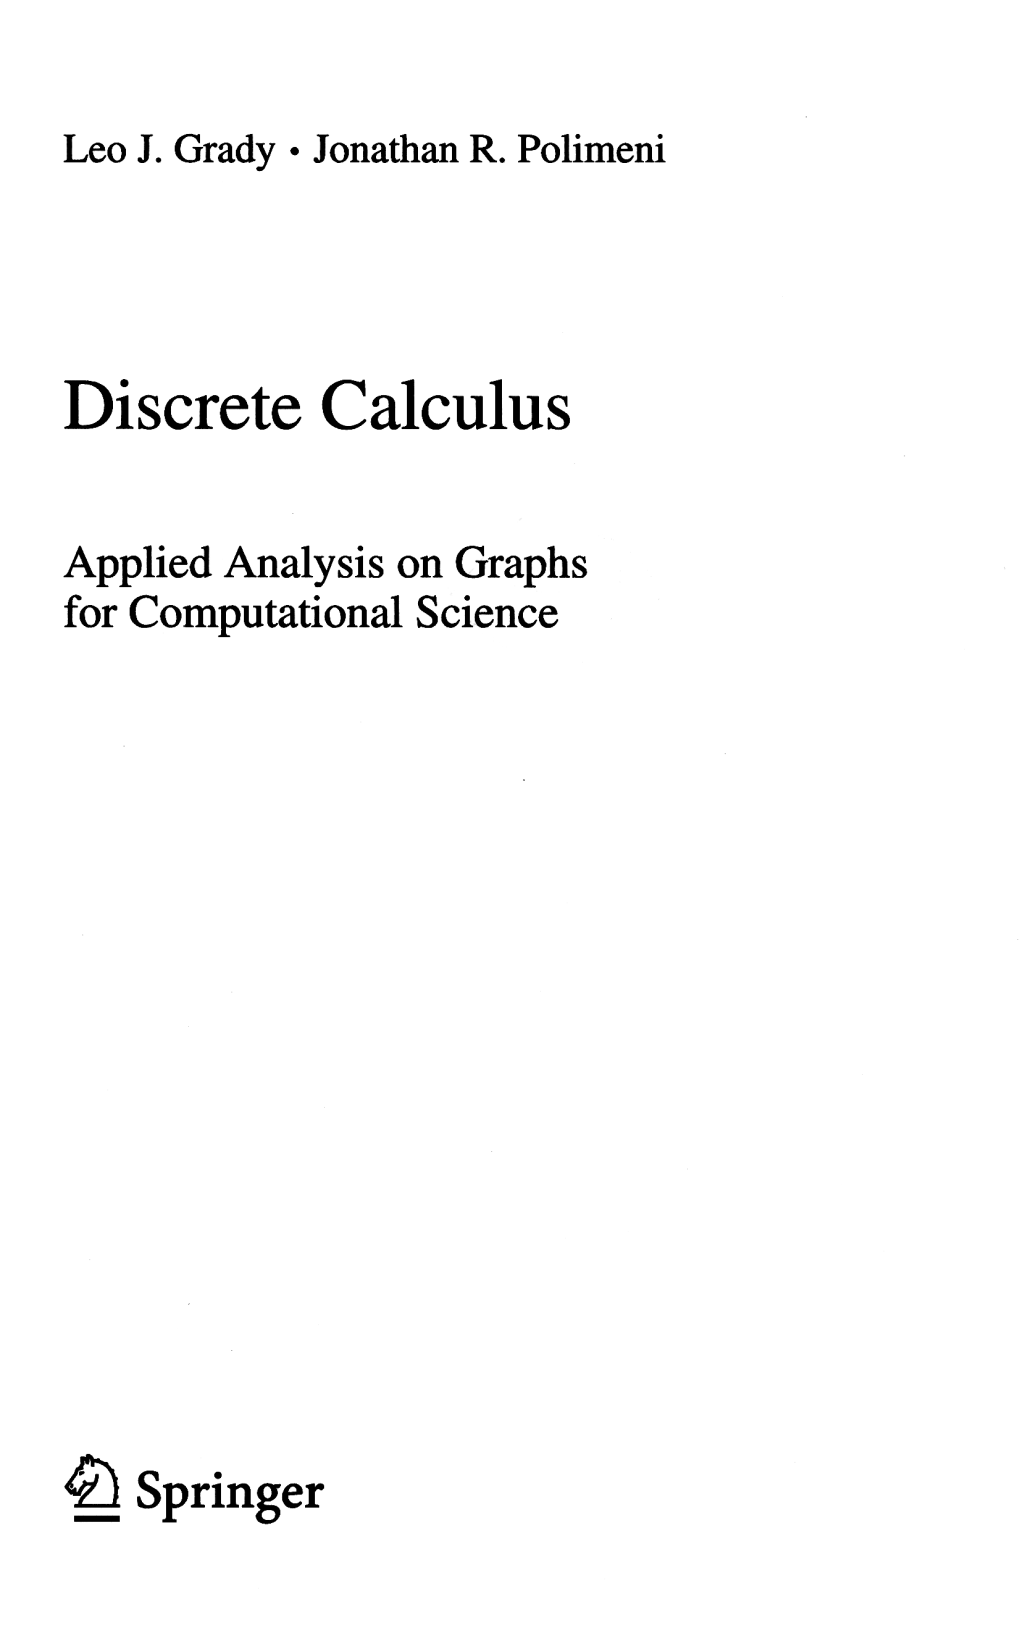 Discrete Calculus